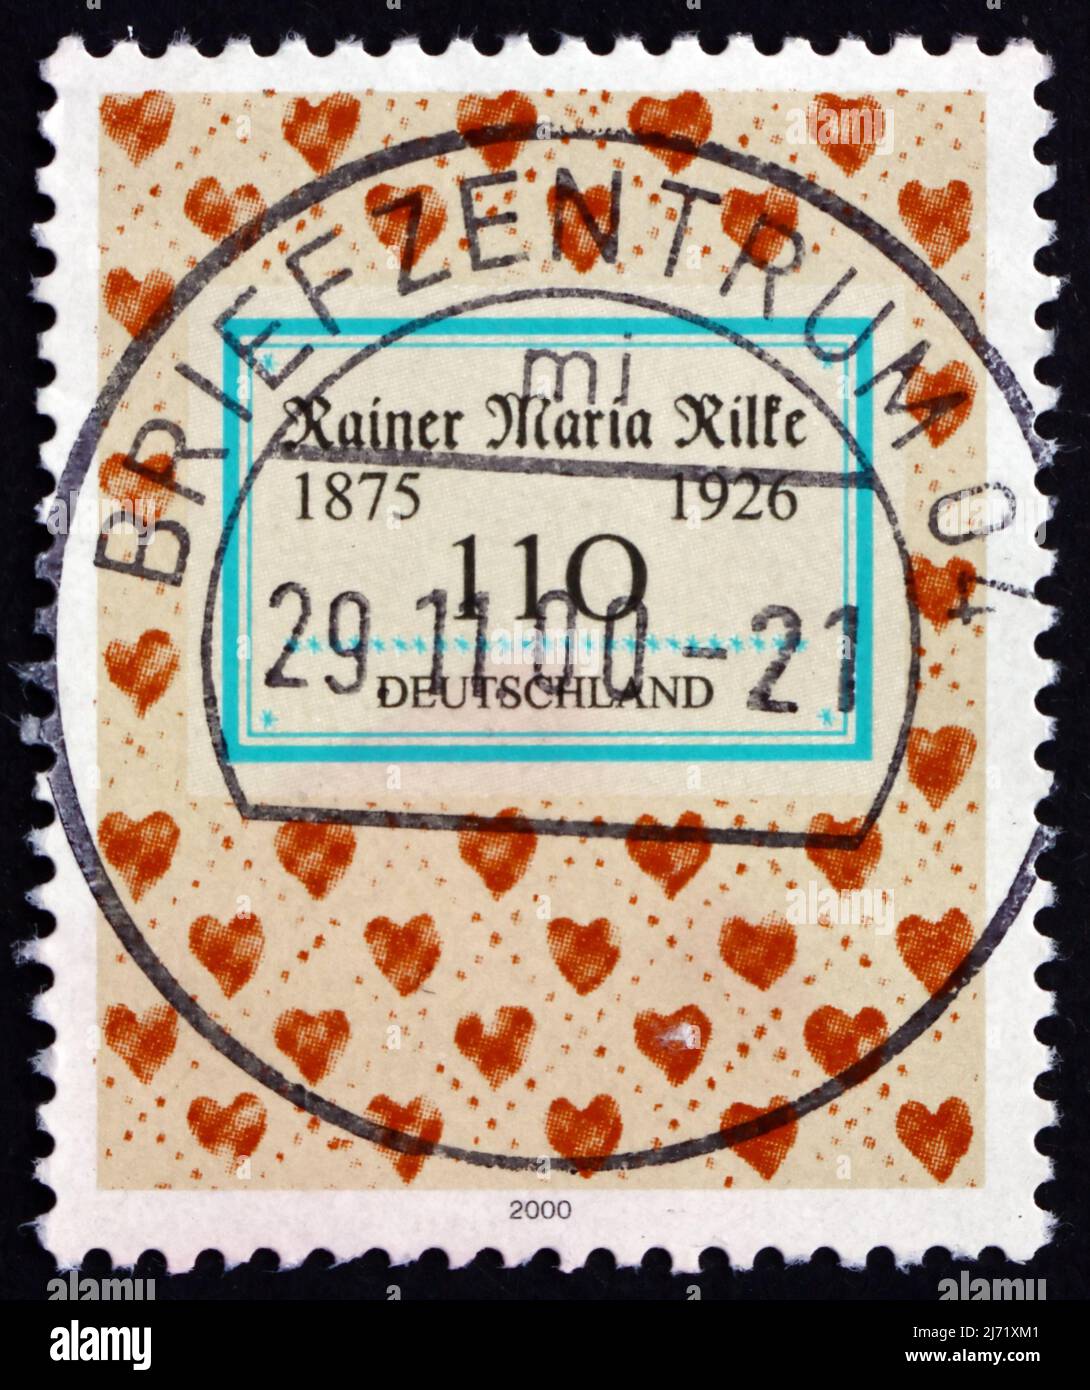 DEUTSCHLAND - UM 2000: Eine in Deutschland gedruckte Briefmarke zeigt Rainer Maria Rilke, böhmisch-österreichischer Dichter und Schriftsteller, Hearts, um 2000 Stockfoto